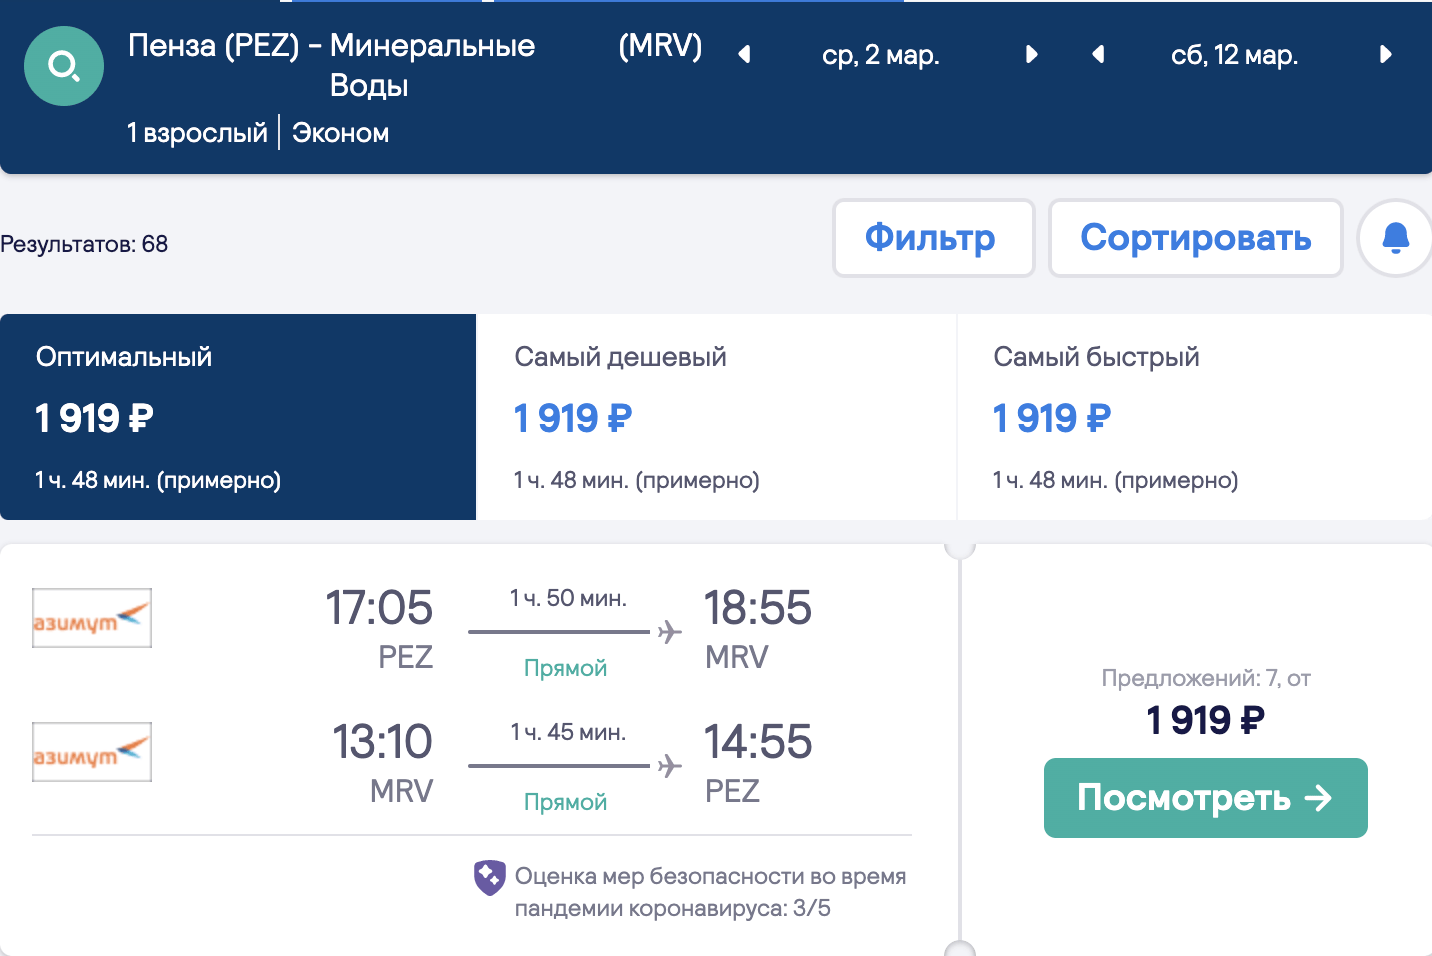 Tuyển chọn nhiều chuyến bay giá rẻ từ các vùng đến Krasnodar và Minvody với giá 1800₽ khứ hồi